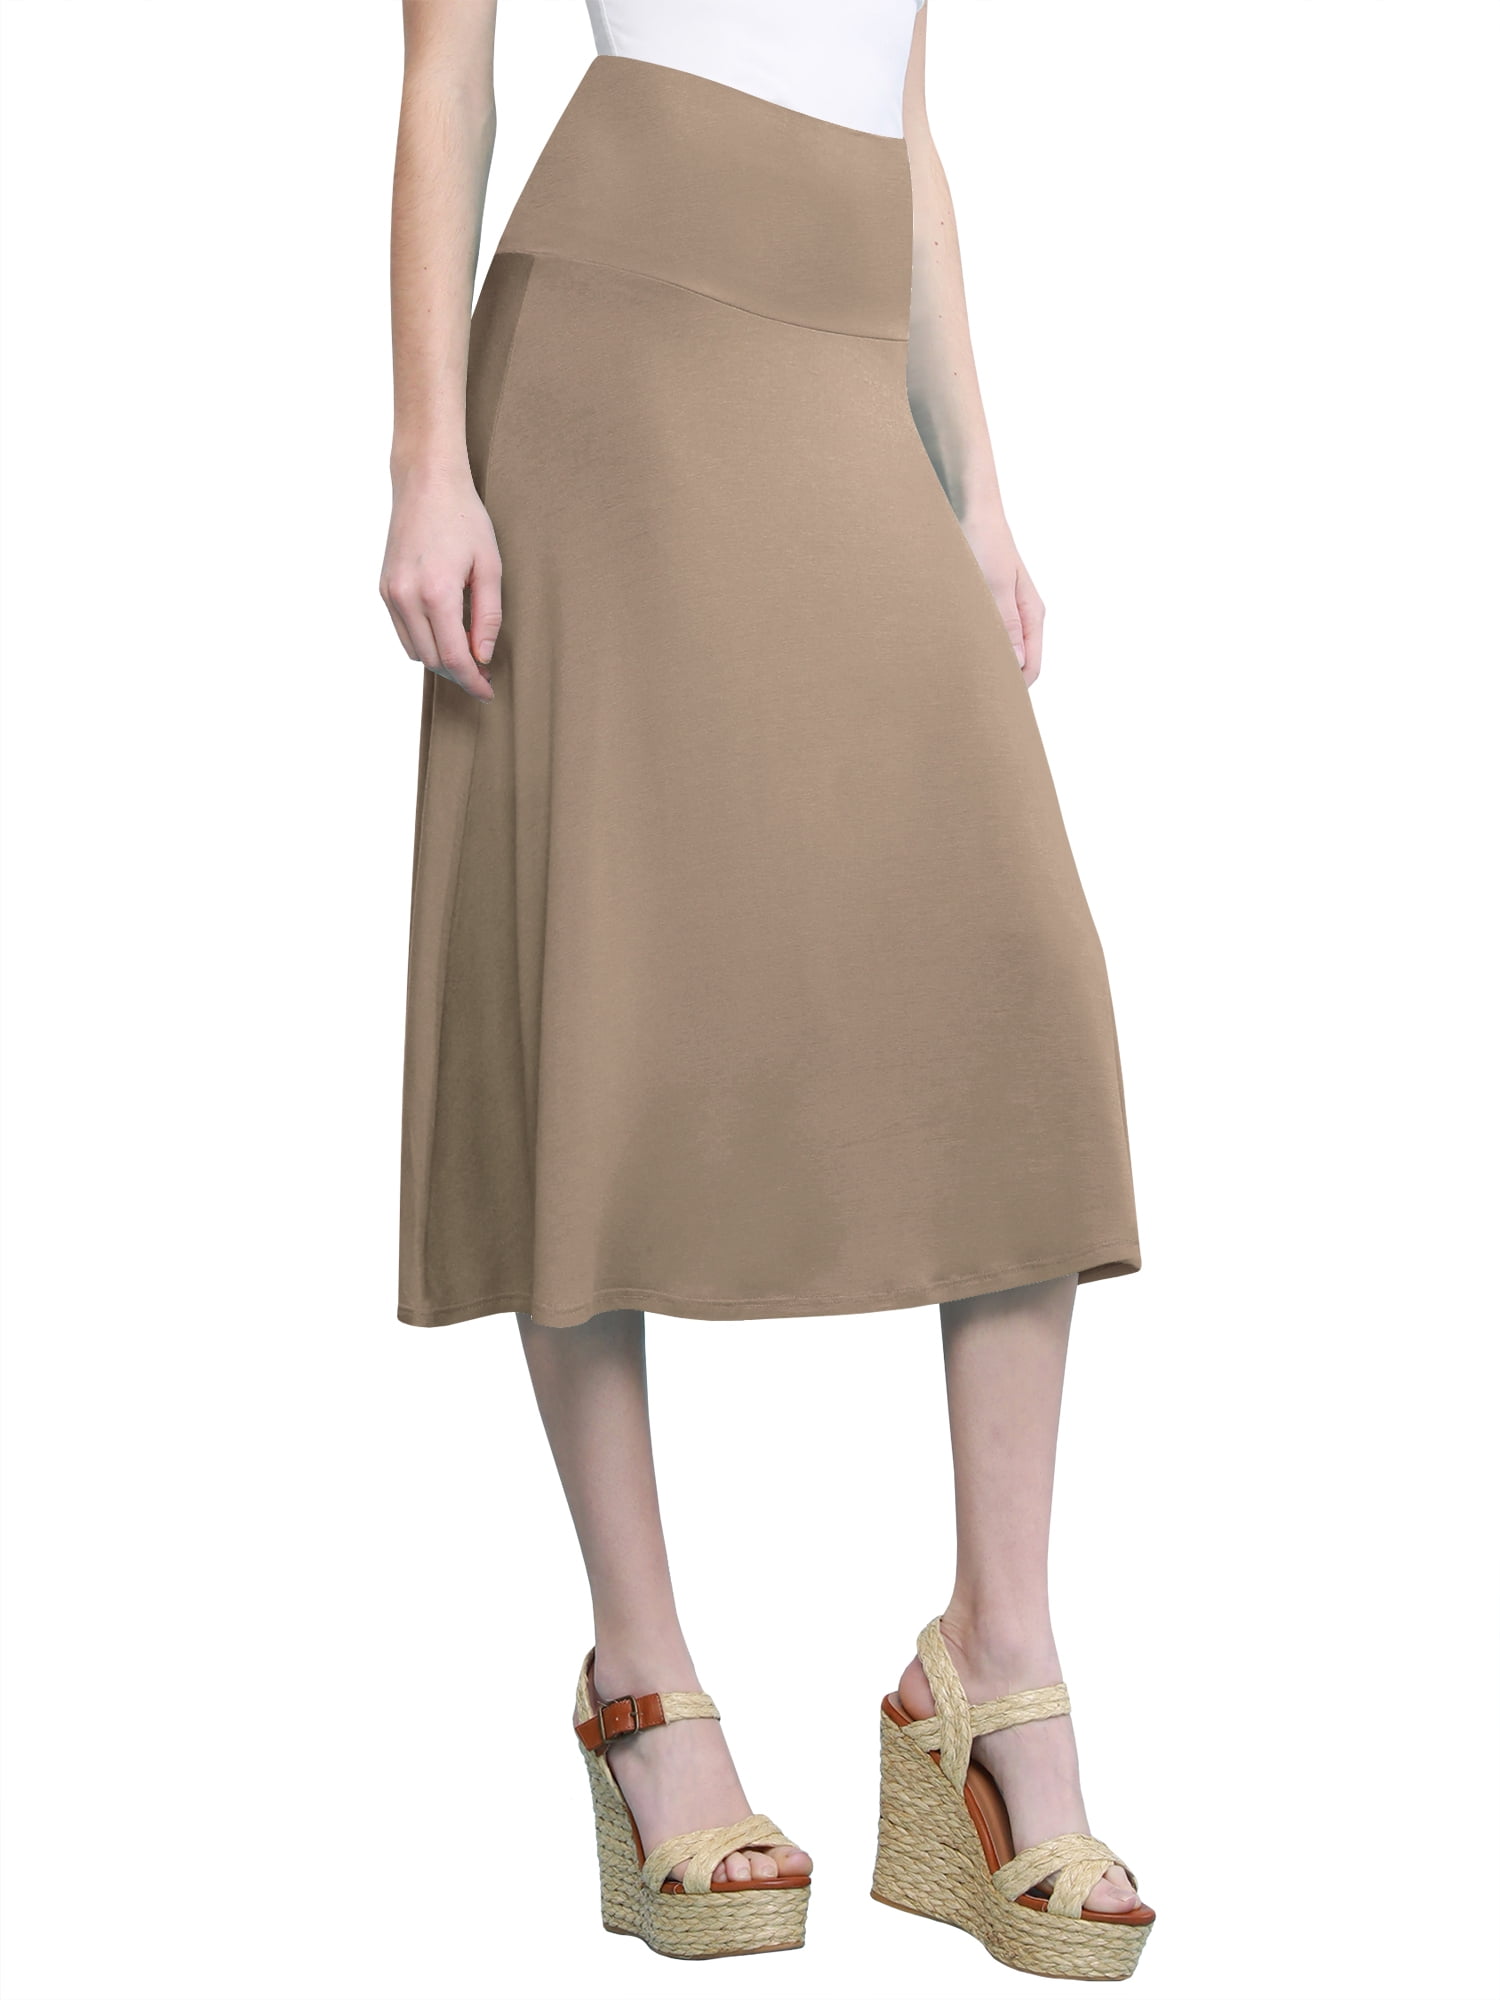 DNA couture | Skirts | Lna Harper White High Waist Soft Bodycon S Ribbed Fold  Over Midi Skirt Nwts | Poshmark